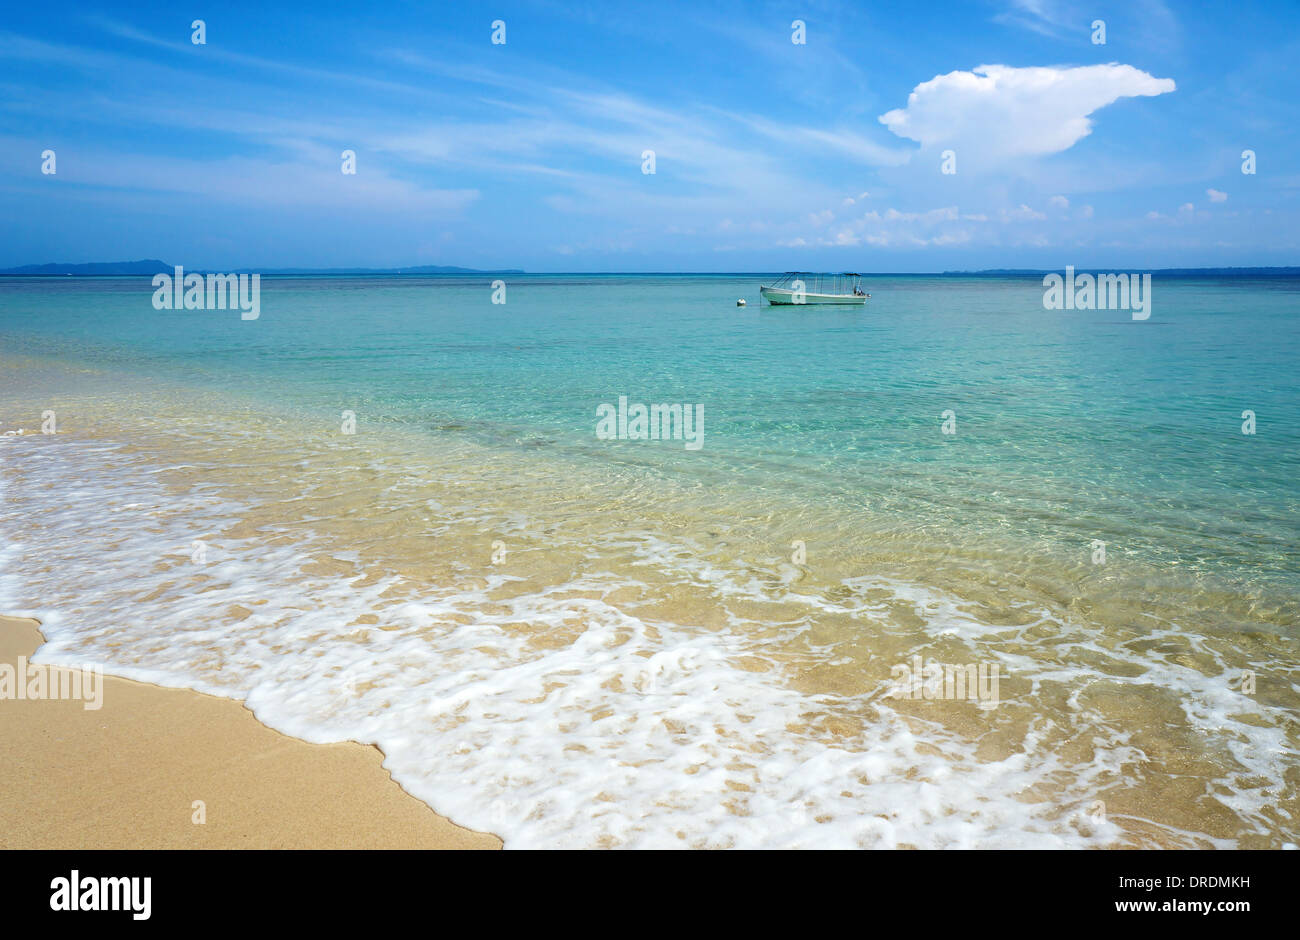 Plage tropicale avec de l'eau turquoise et d'un bateau seul dans la mer des Caraïbes, Zapatillas islands, Panama Banque D'Images